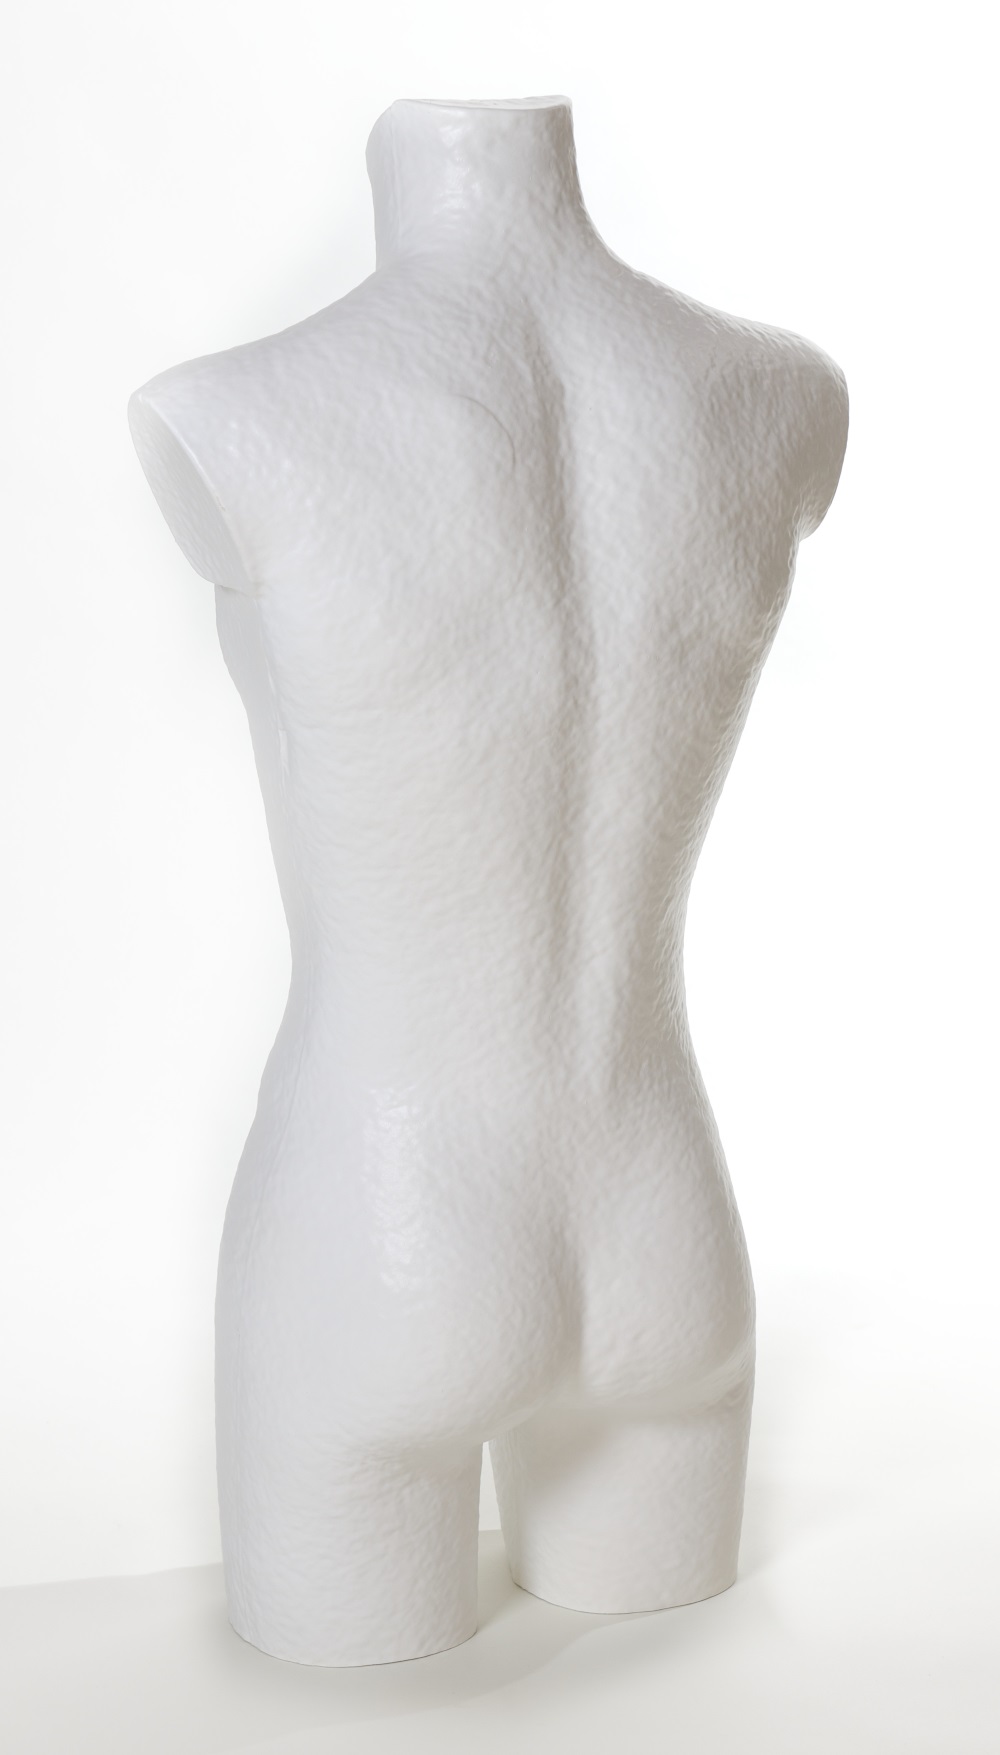 Herrenbüste aus Pappmaché, Konfektionsgröße 46, Farbe weiß